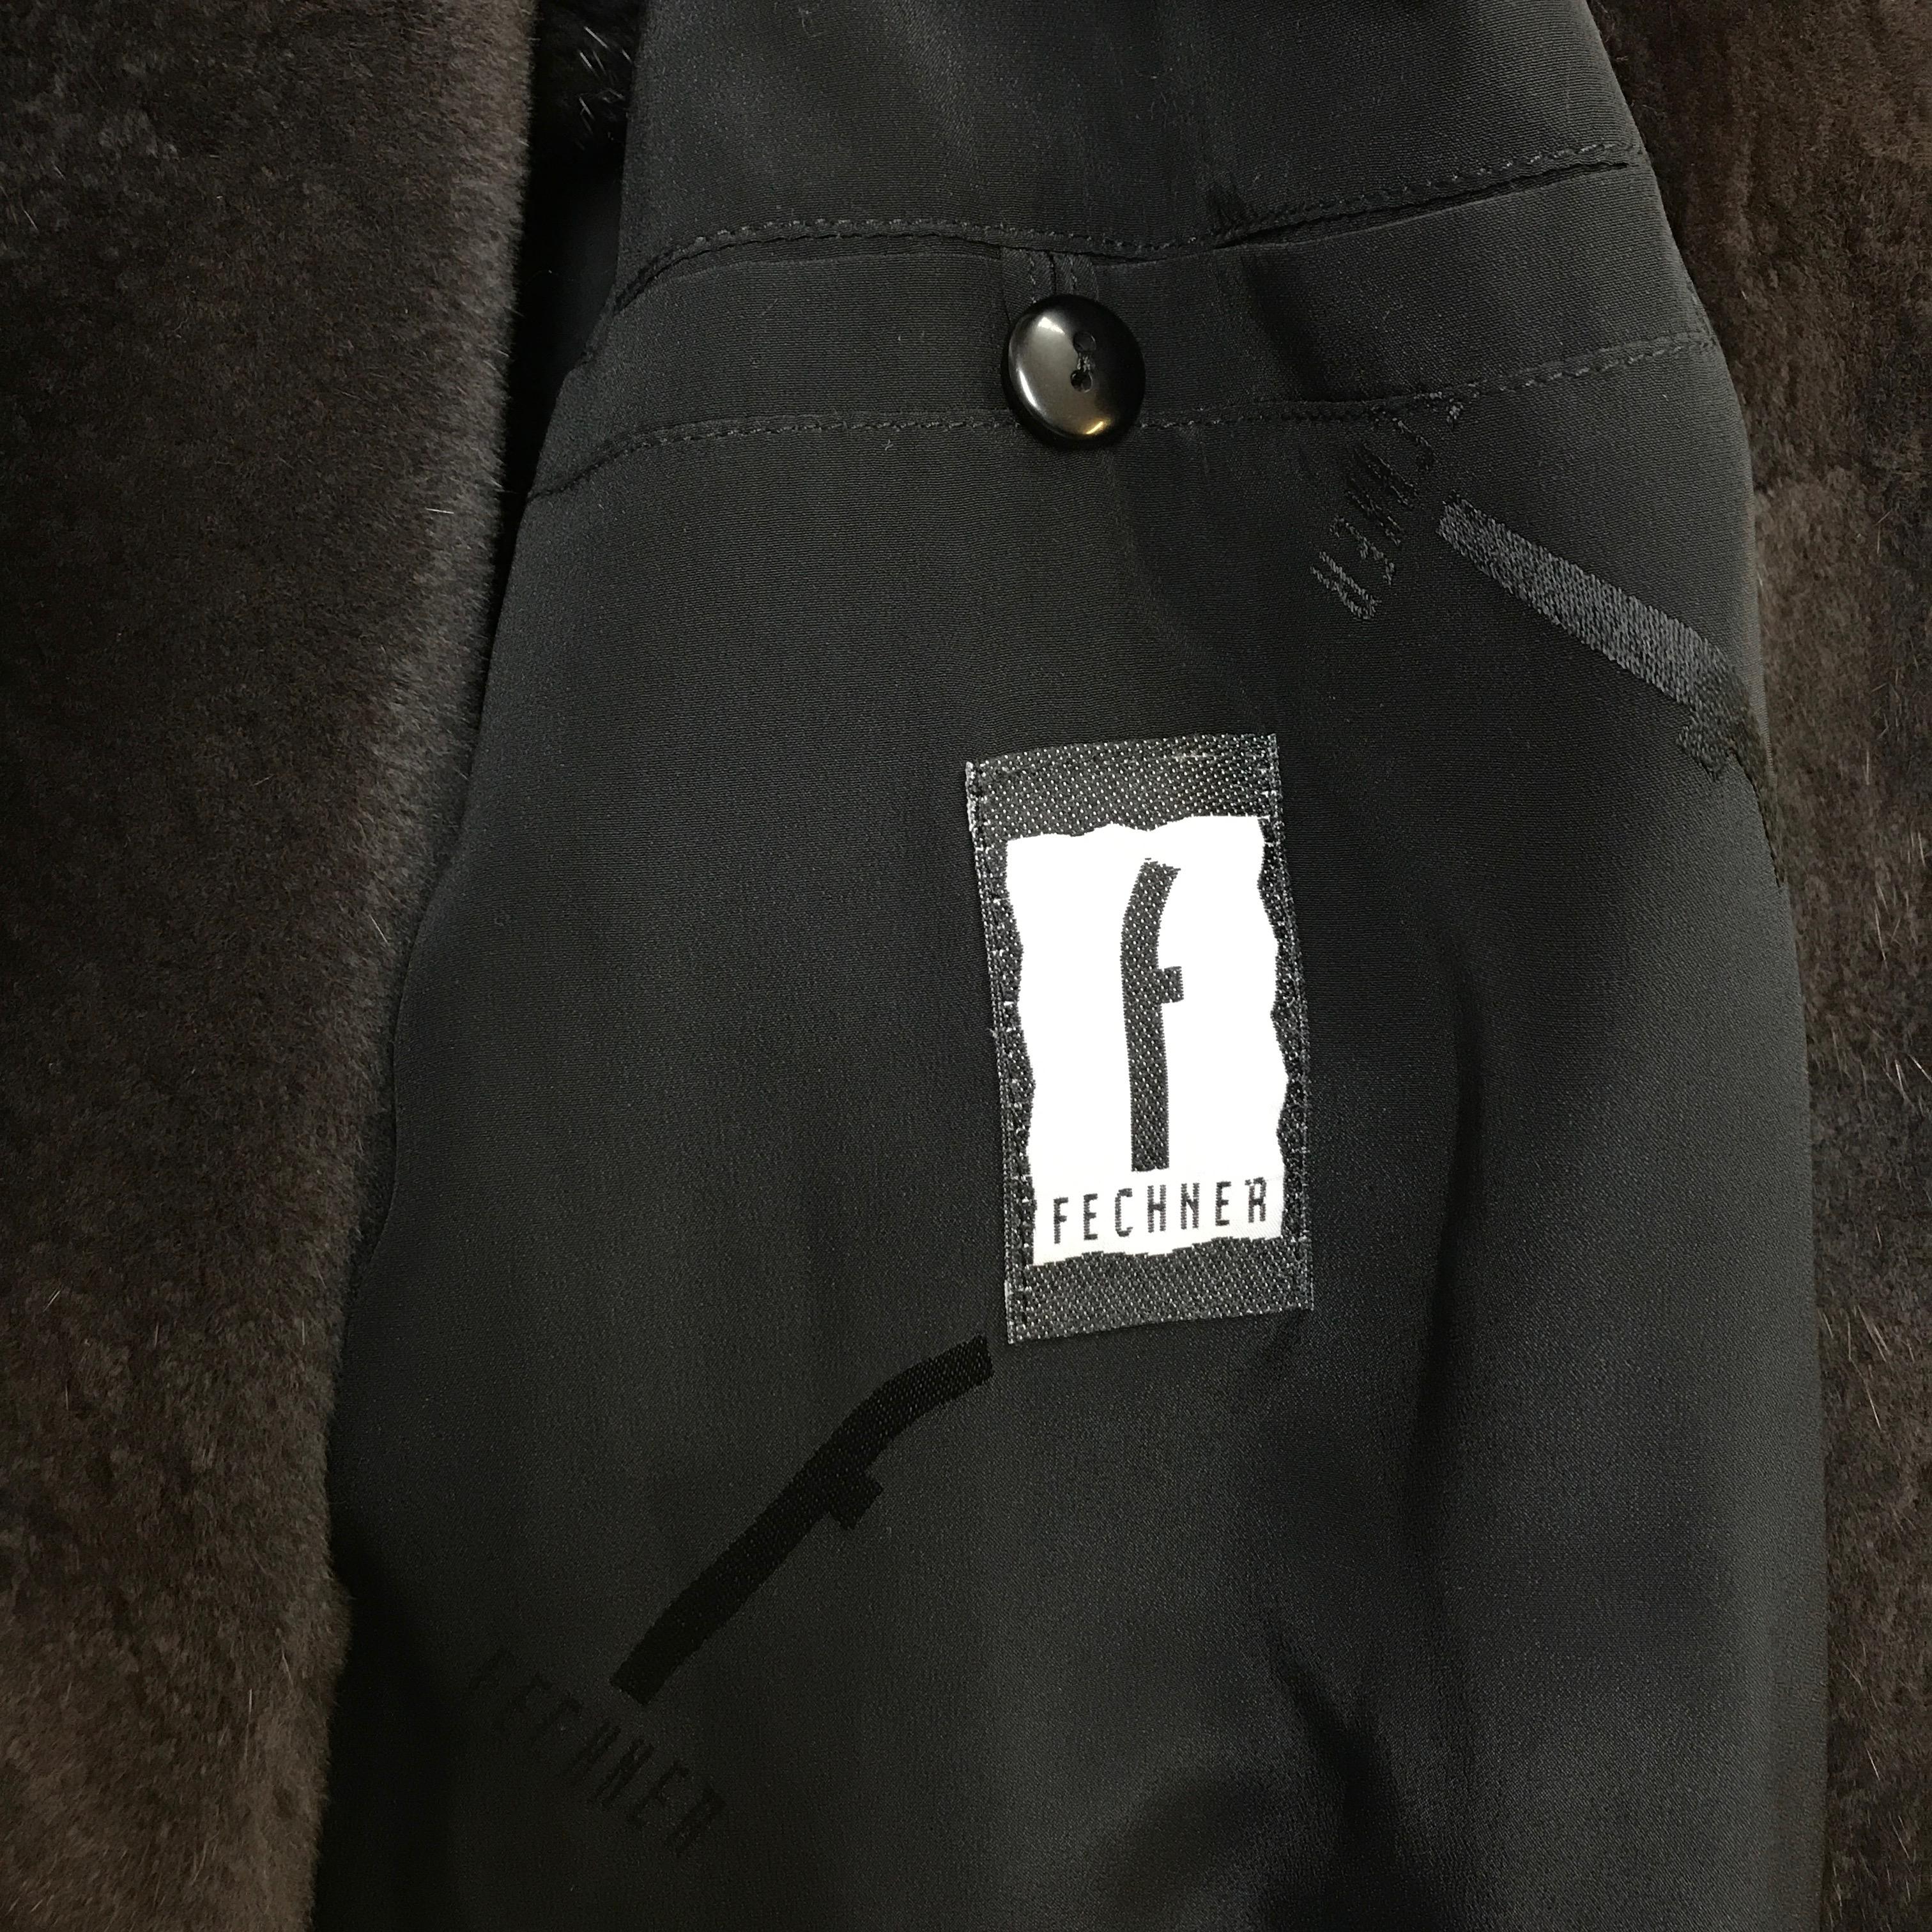 Sheared velvet silk mink fur jacket by FECHNER. Black/dark gray. (6) For Sale 5